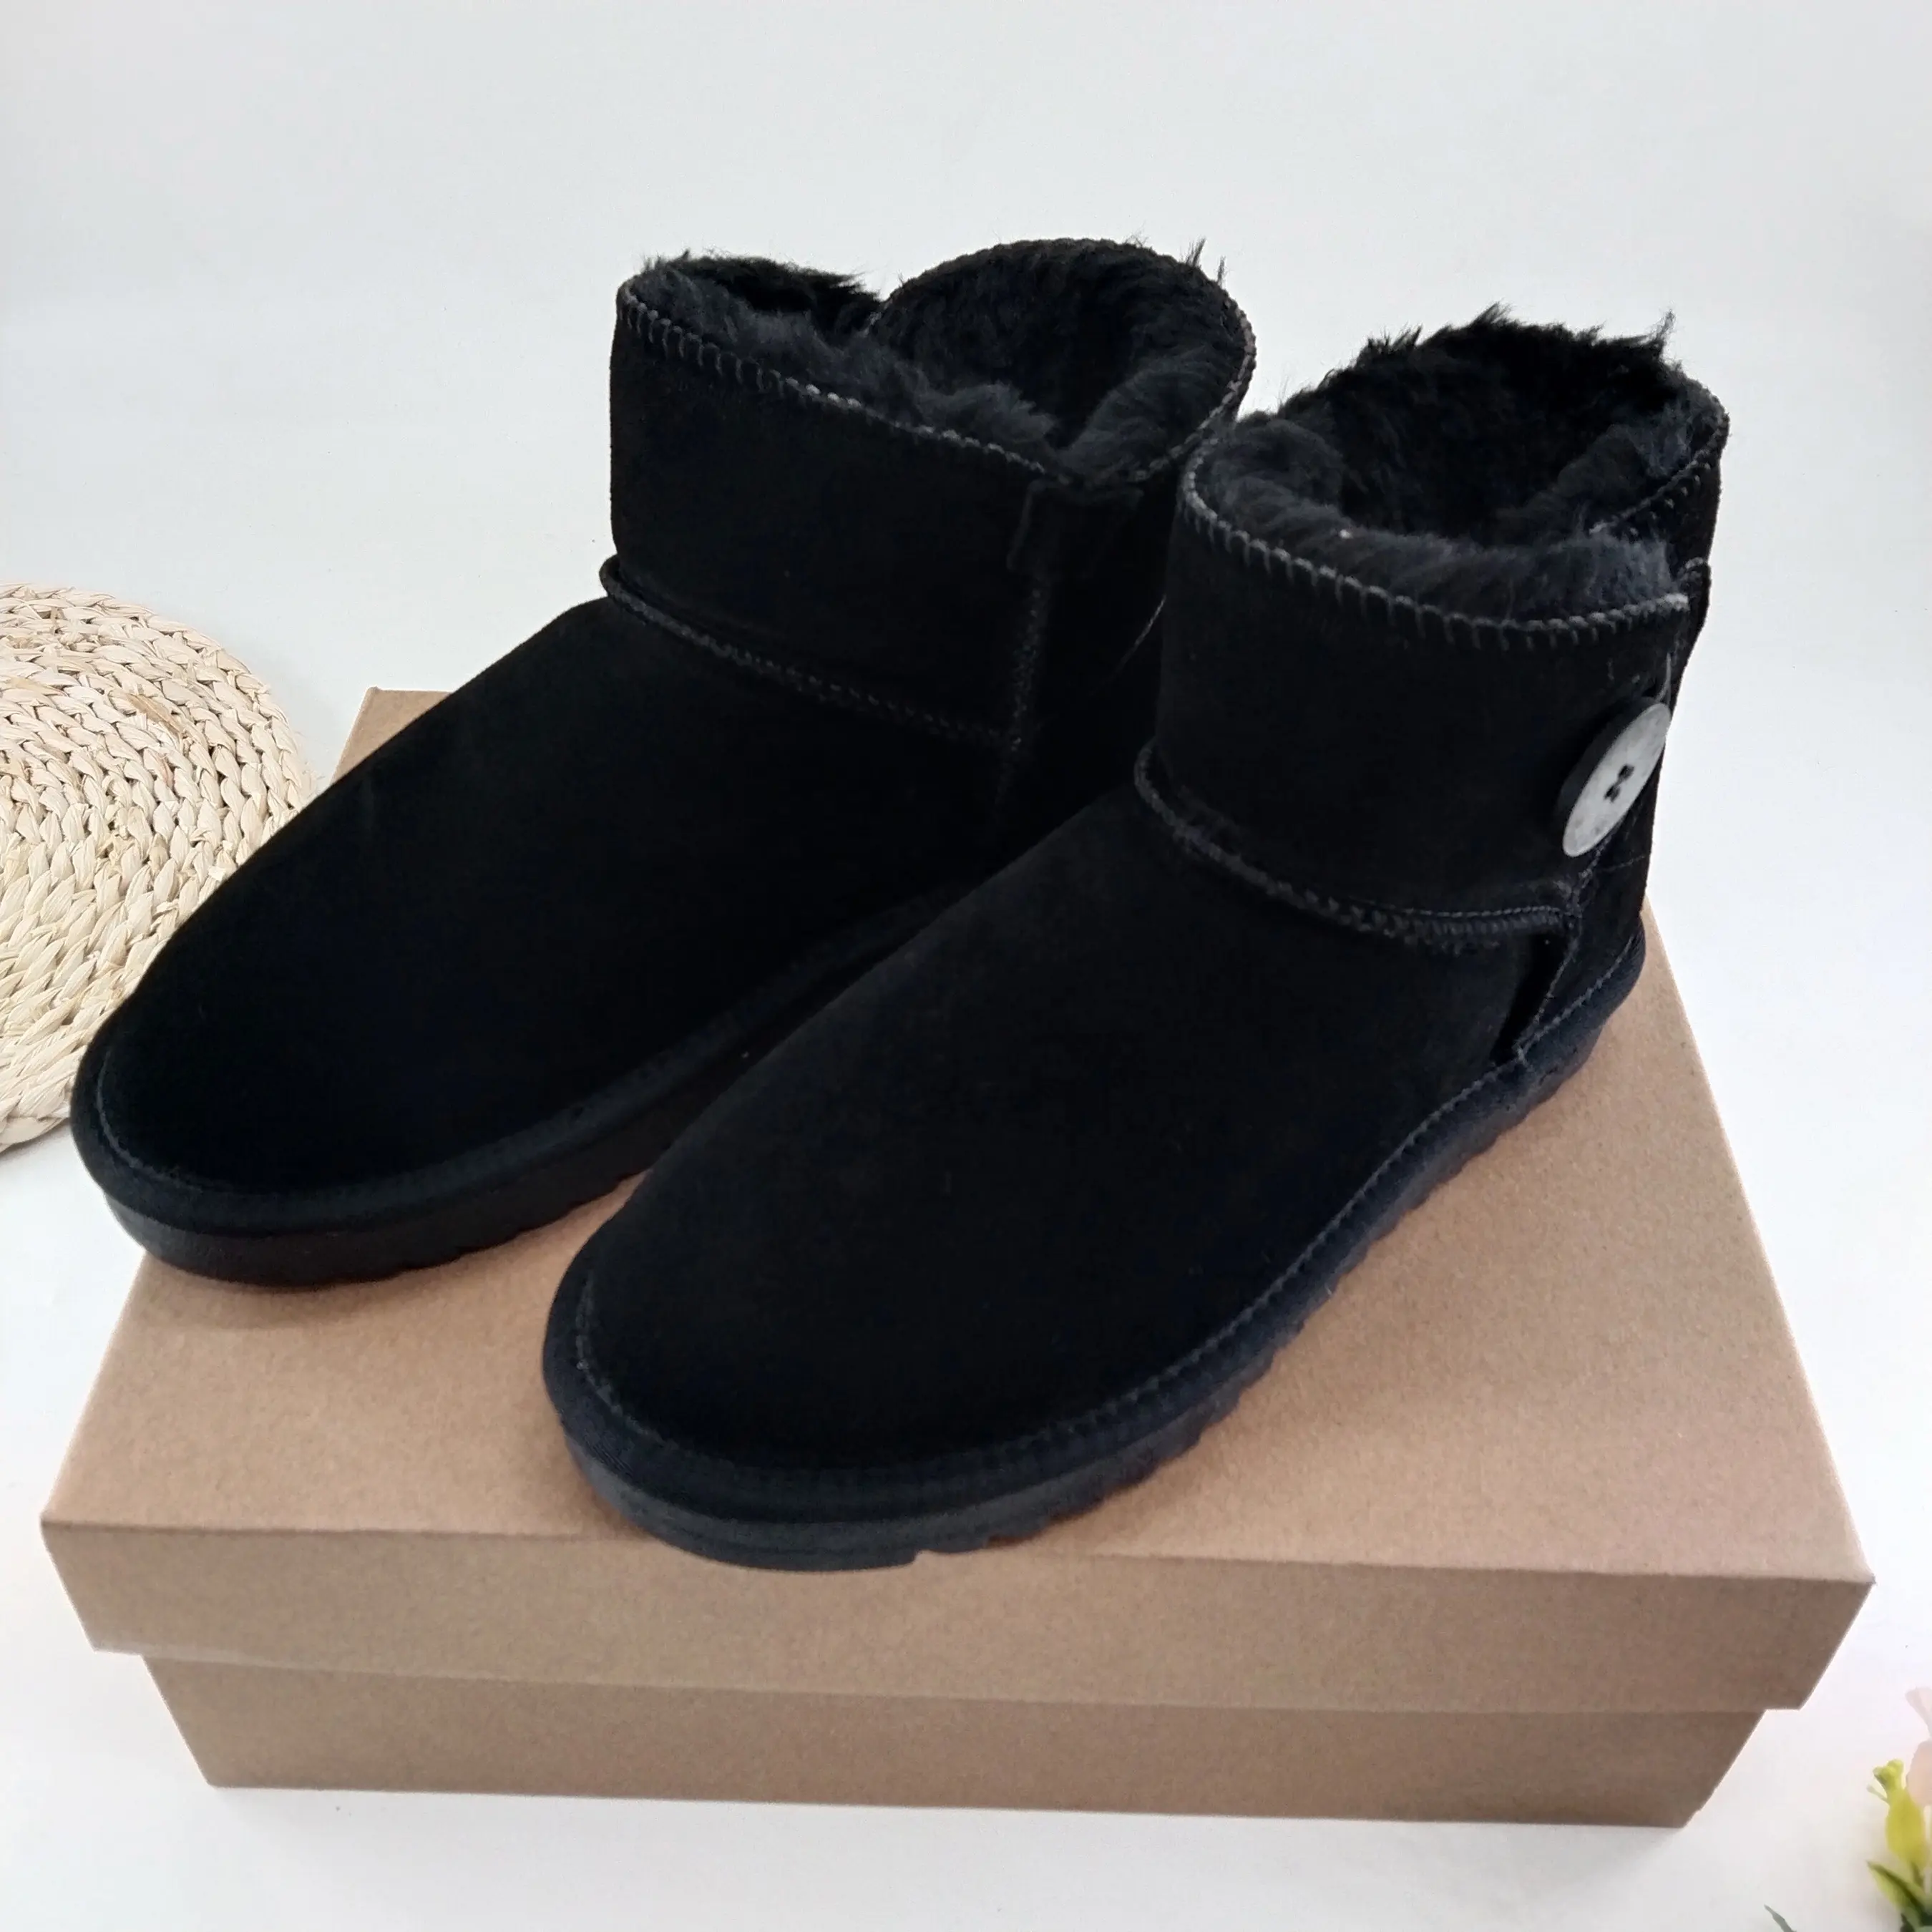 Nuovo arrivo stivali donna donna in vera pelle nera invernale di alta qualità